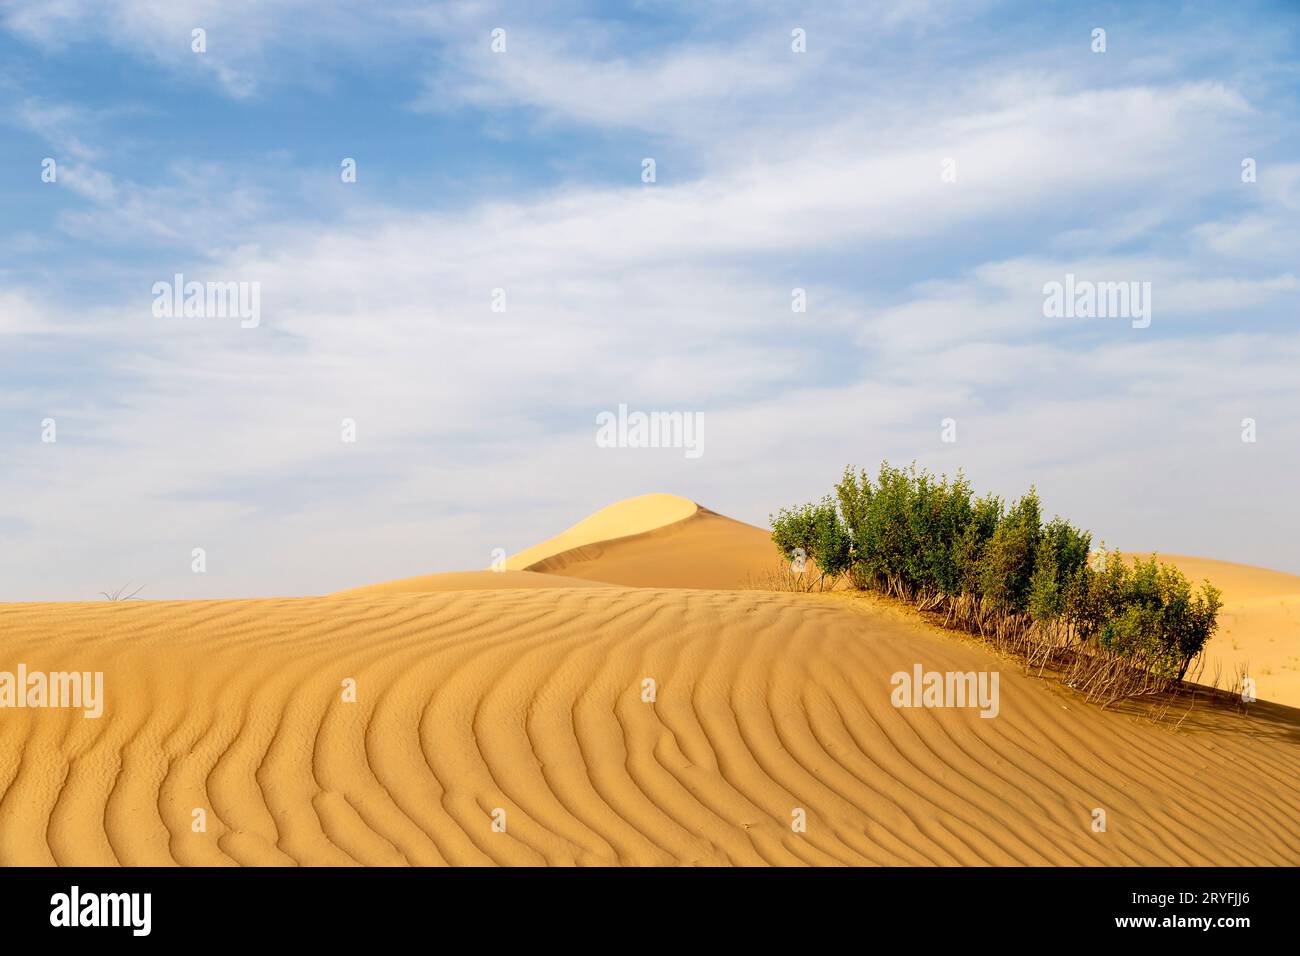 Arbusti desertici nel deserto, paesaggio naturale durante una luminosa giornata di sole ad Abu Dhabi. Foto di alta qualità. Foto Stock